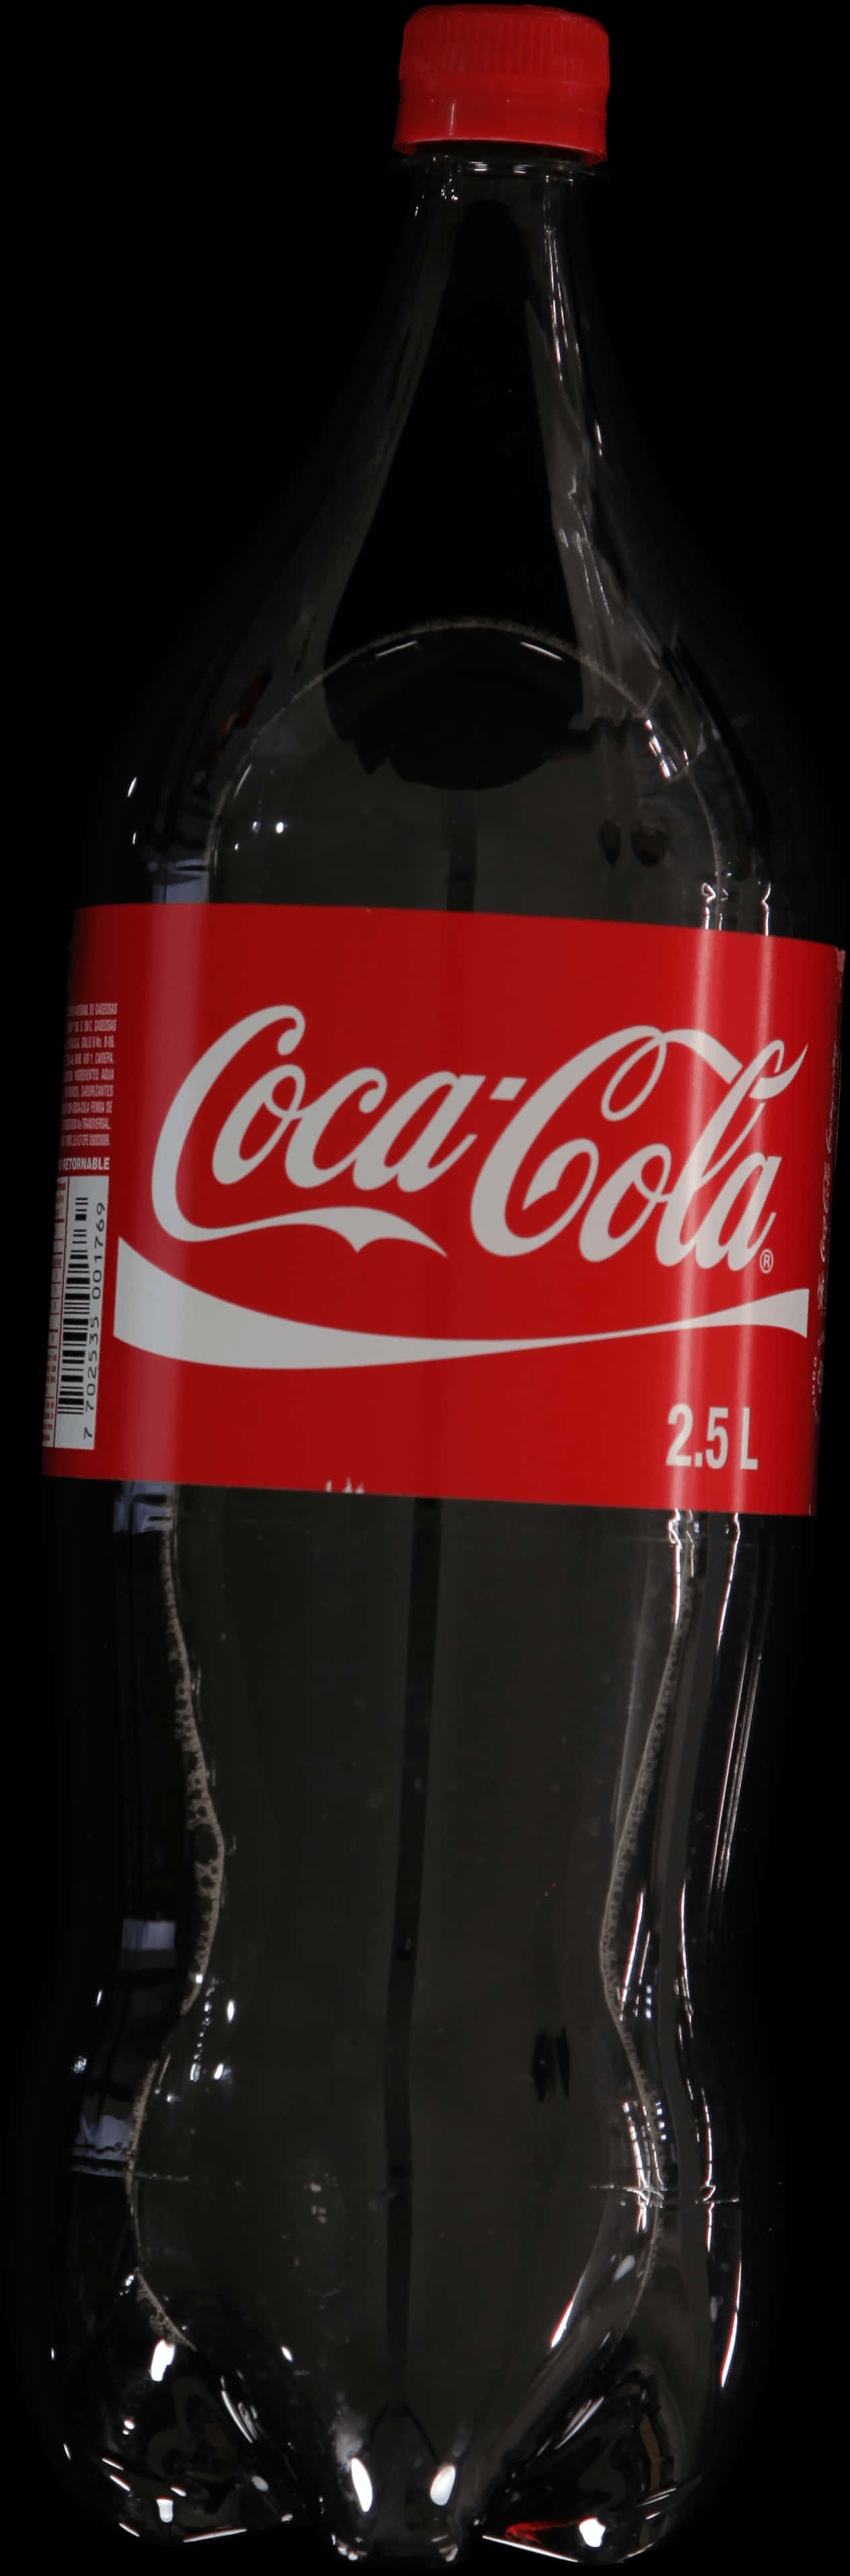 Coca Cola25 L Bottle Black Background PNG